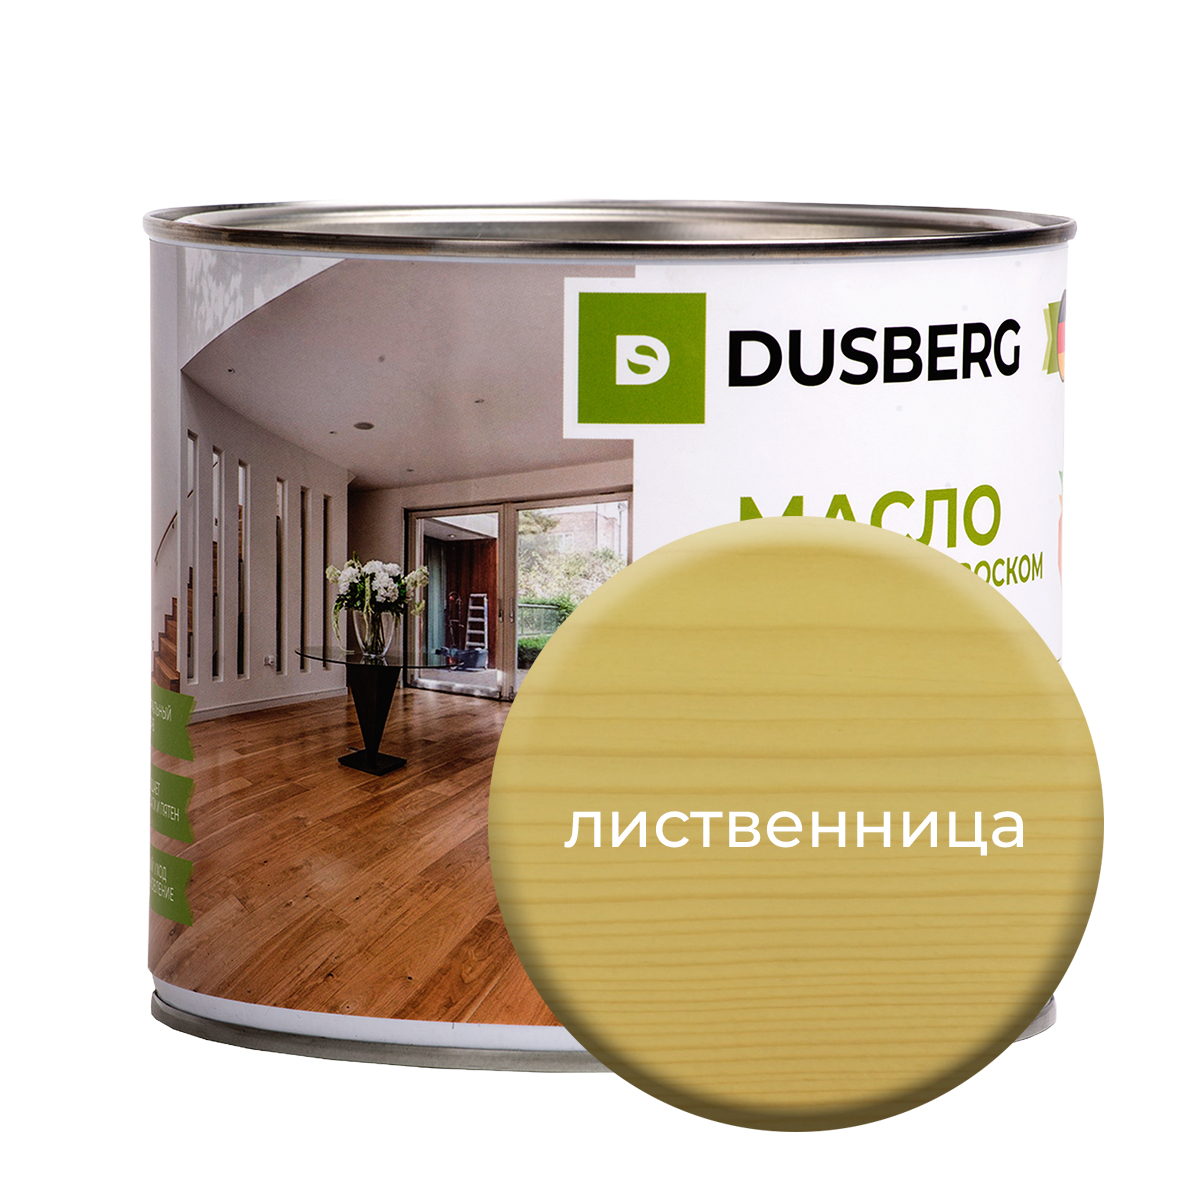 Масло Dusberg с твердым воском на бесцветной основе, 2 л Лиственница масло dusberg с твердым воском на бес ной основе 2 л